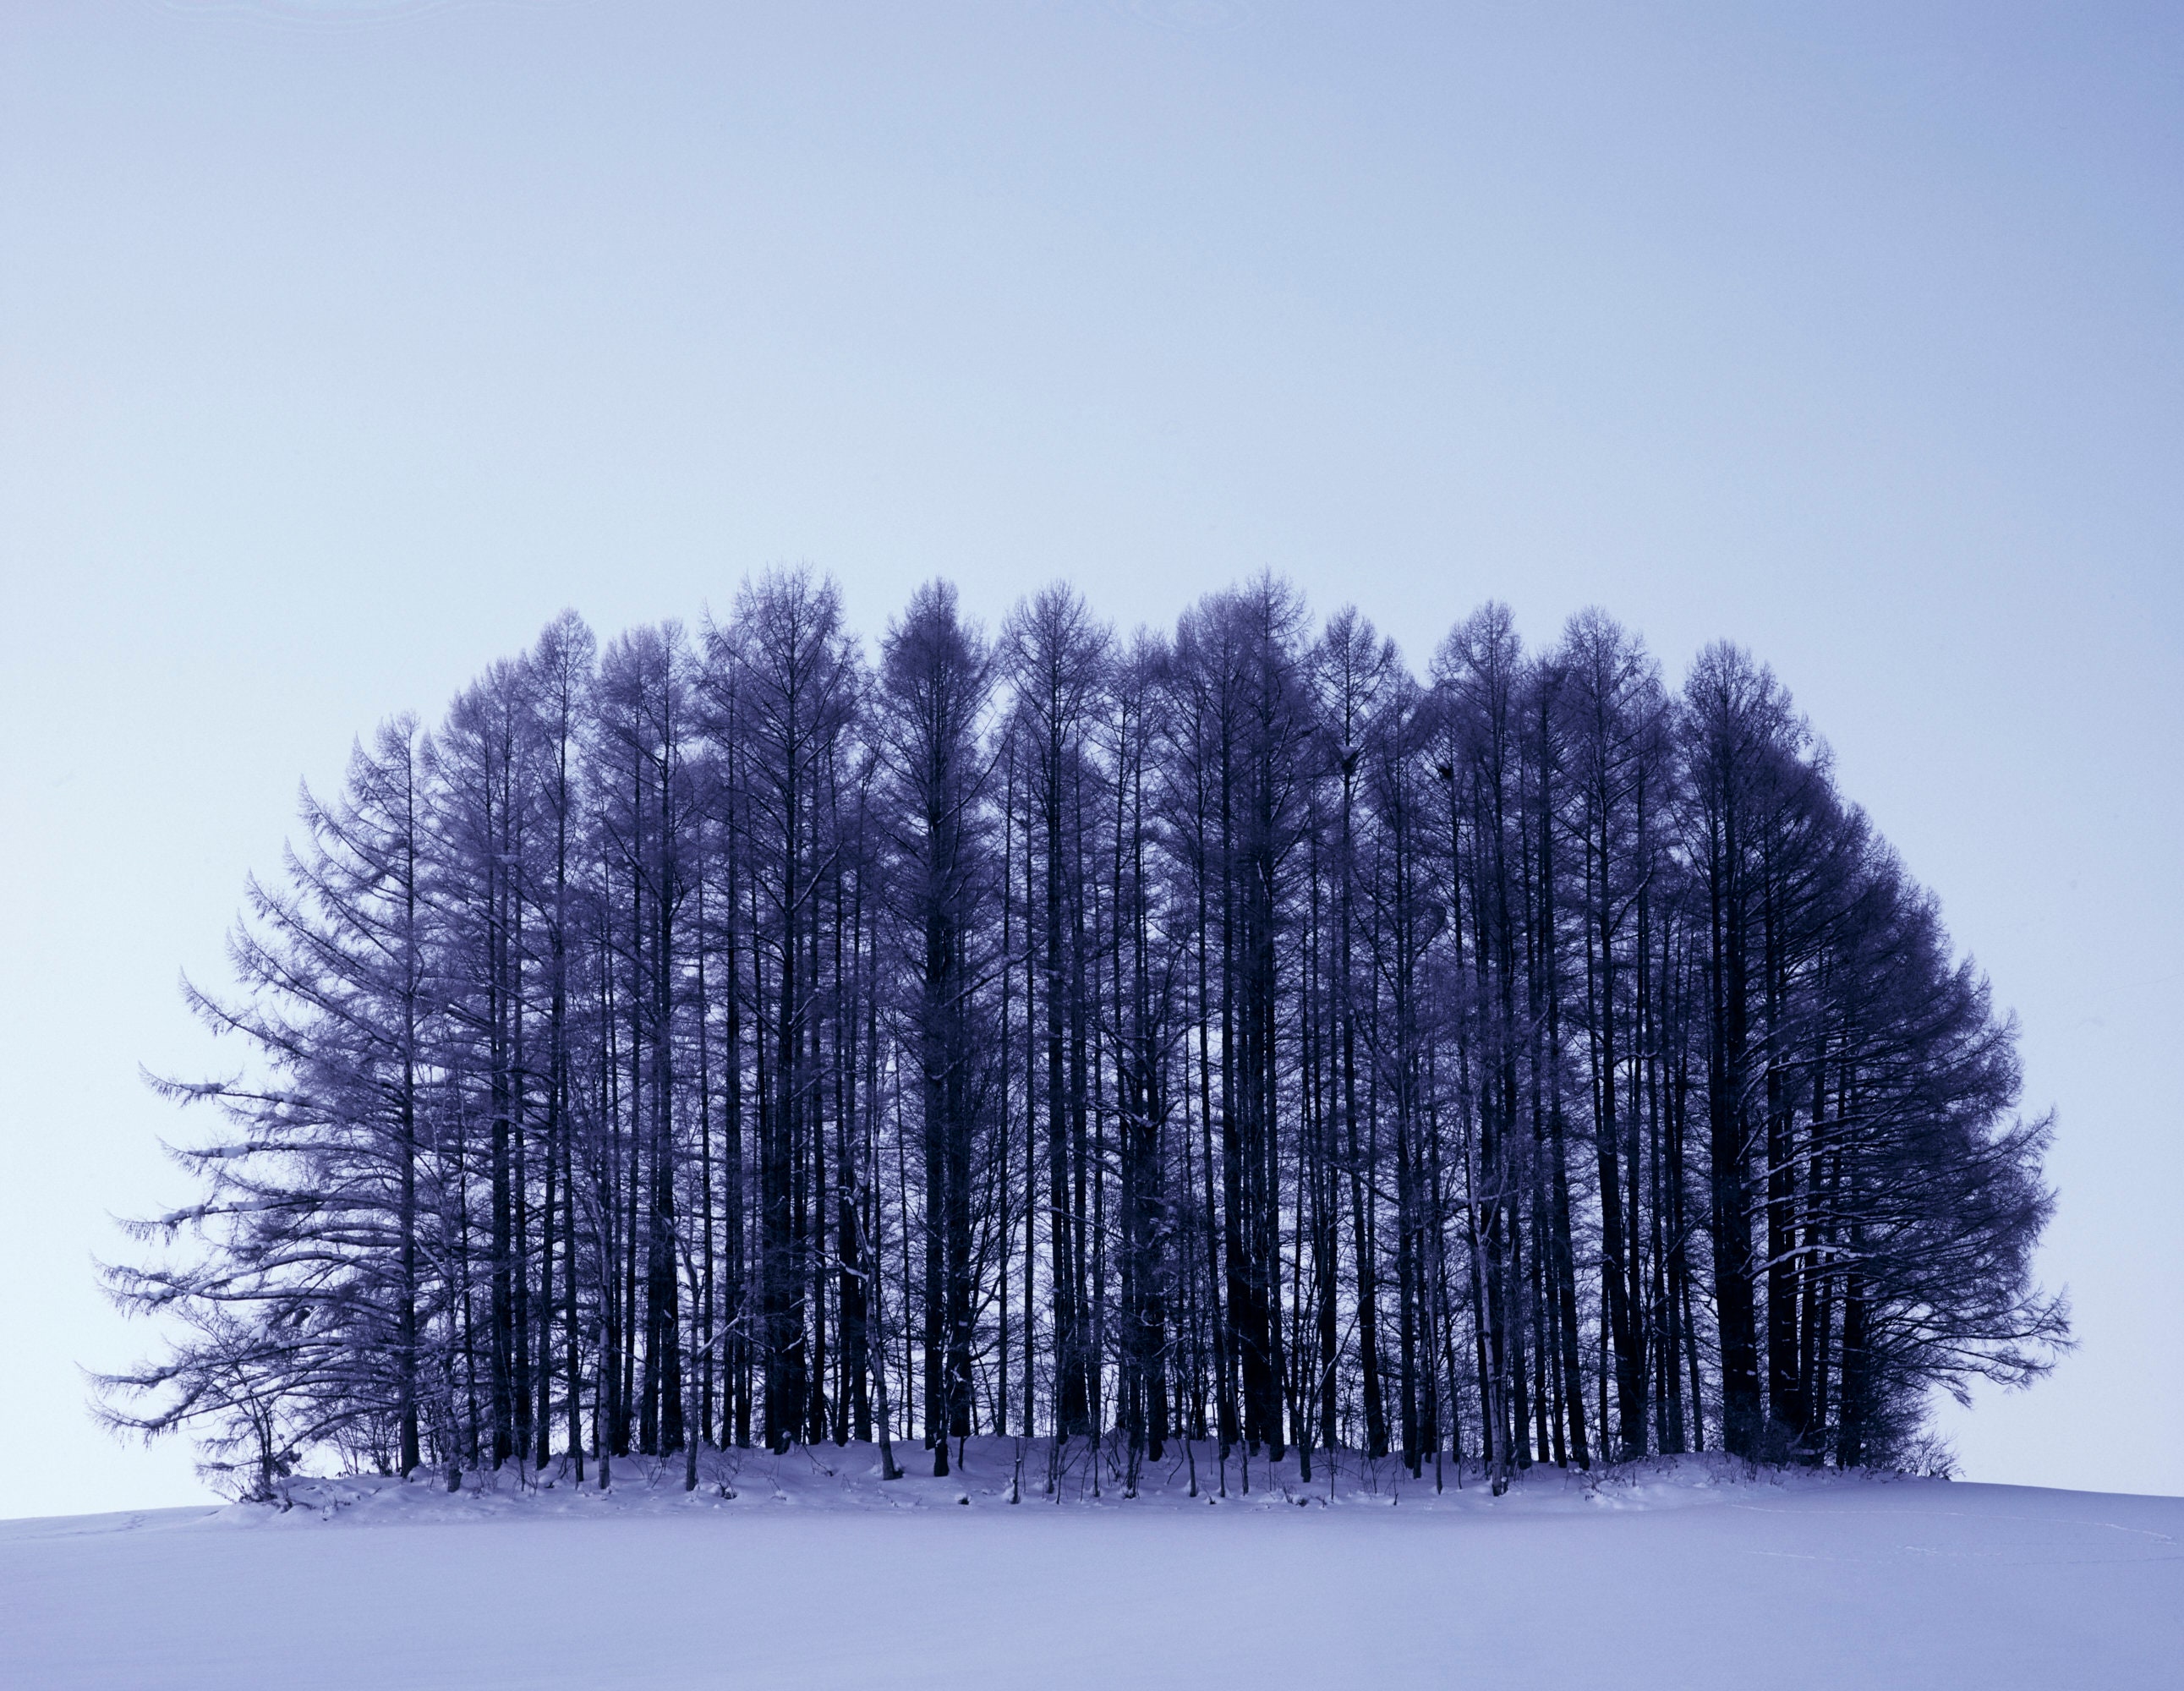 Trees in snow photography Hokkaido Japan winter scenery art | Etsy